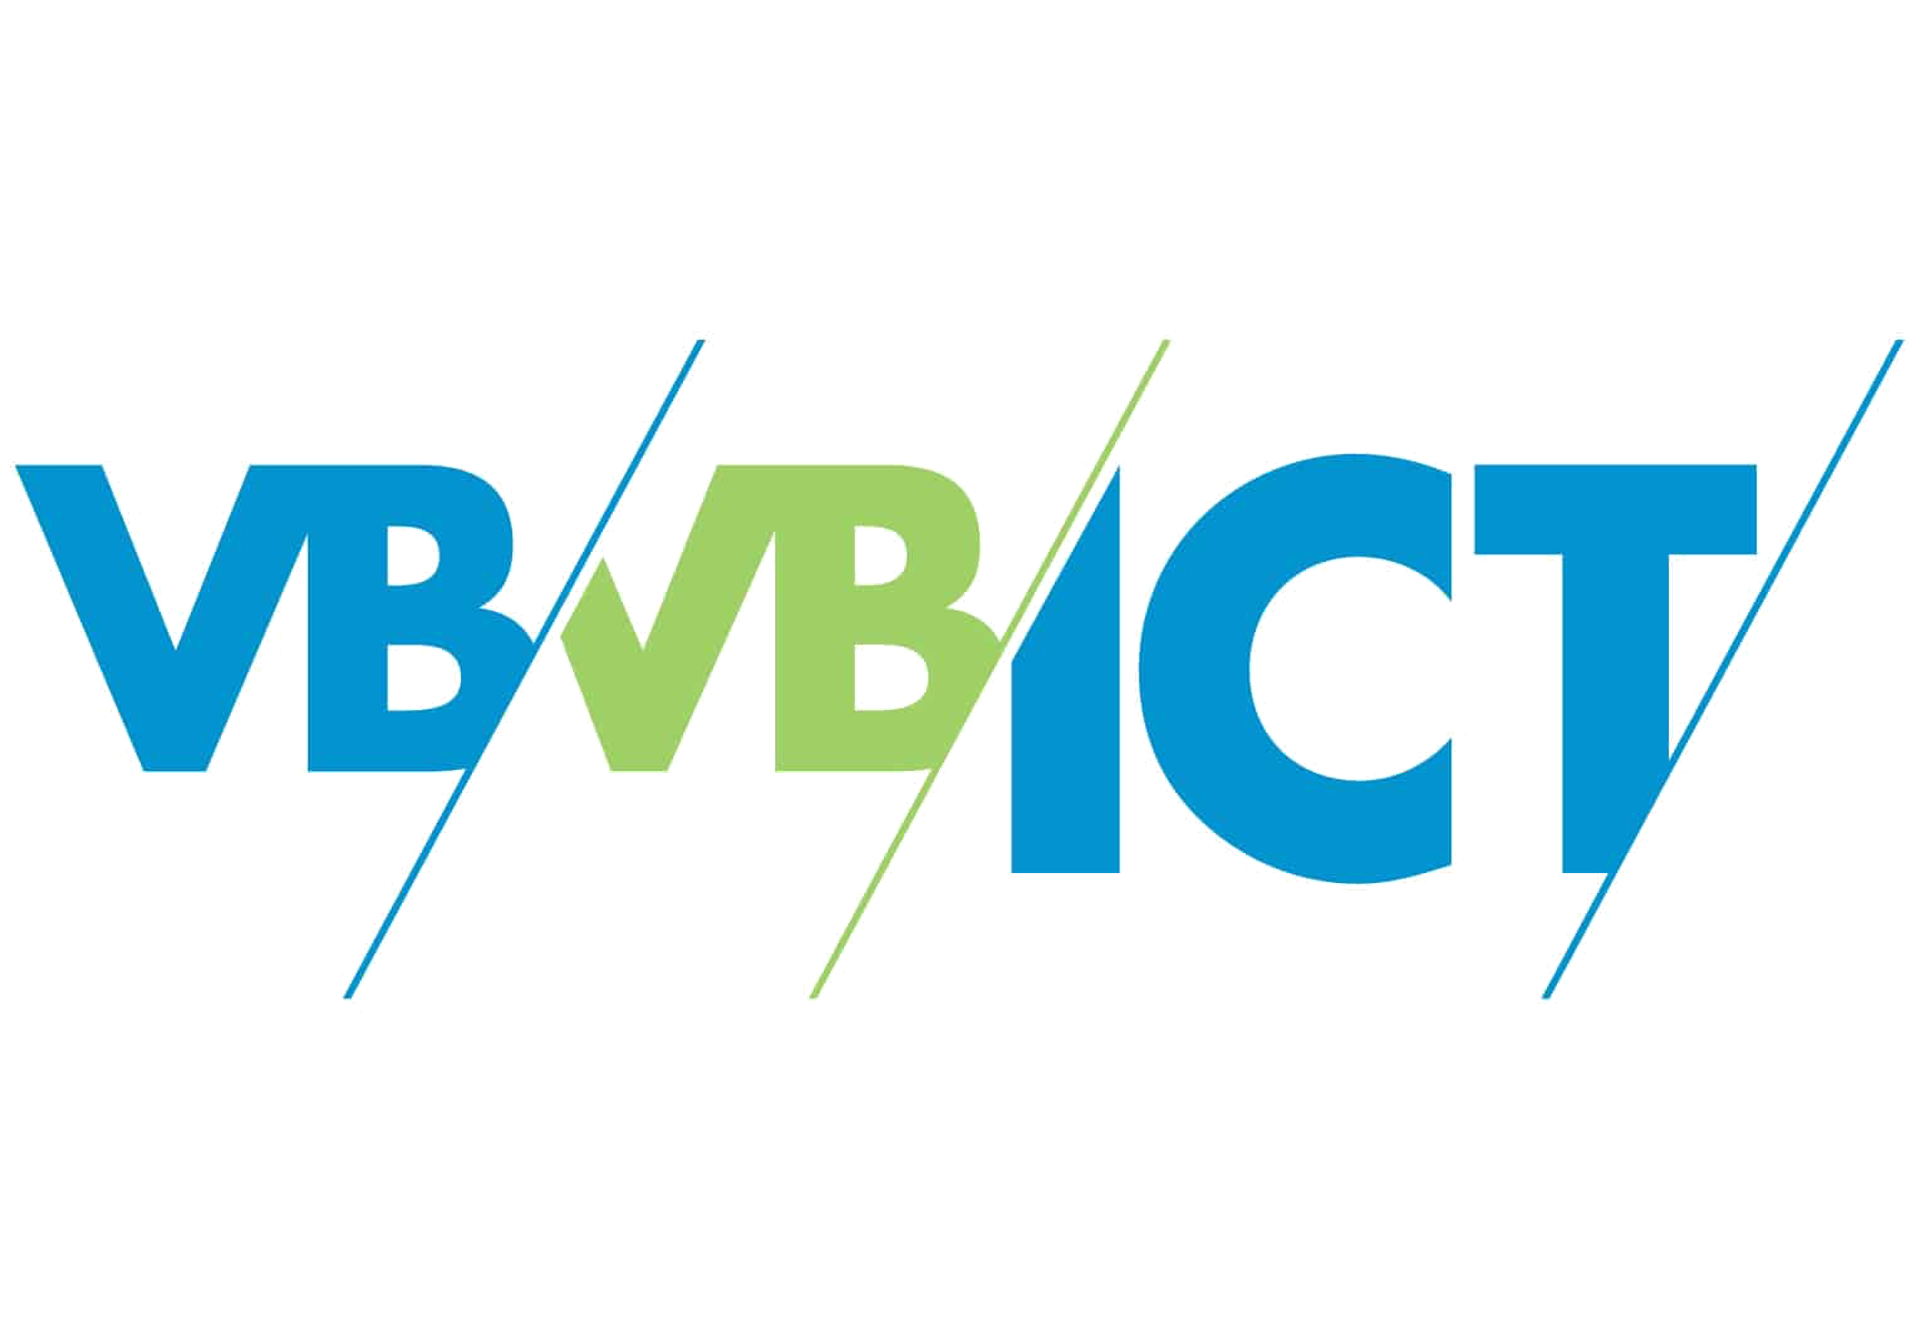 VBVB ICT logo3